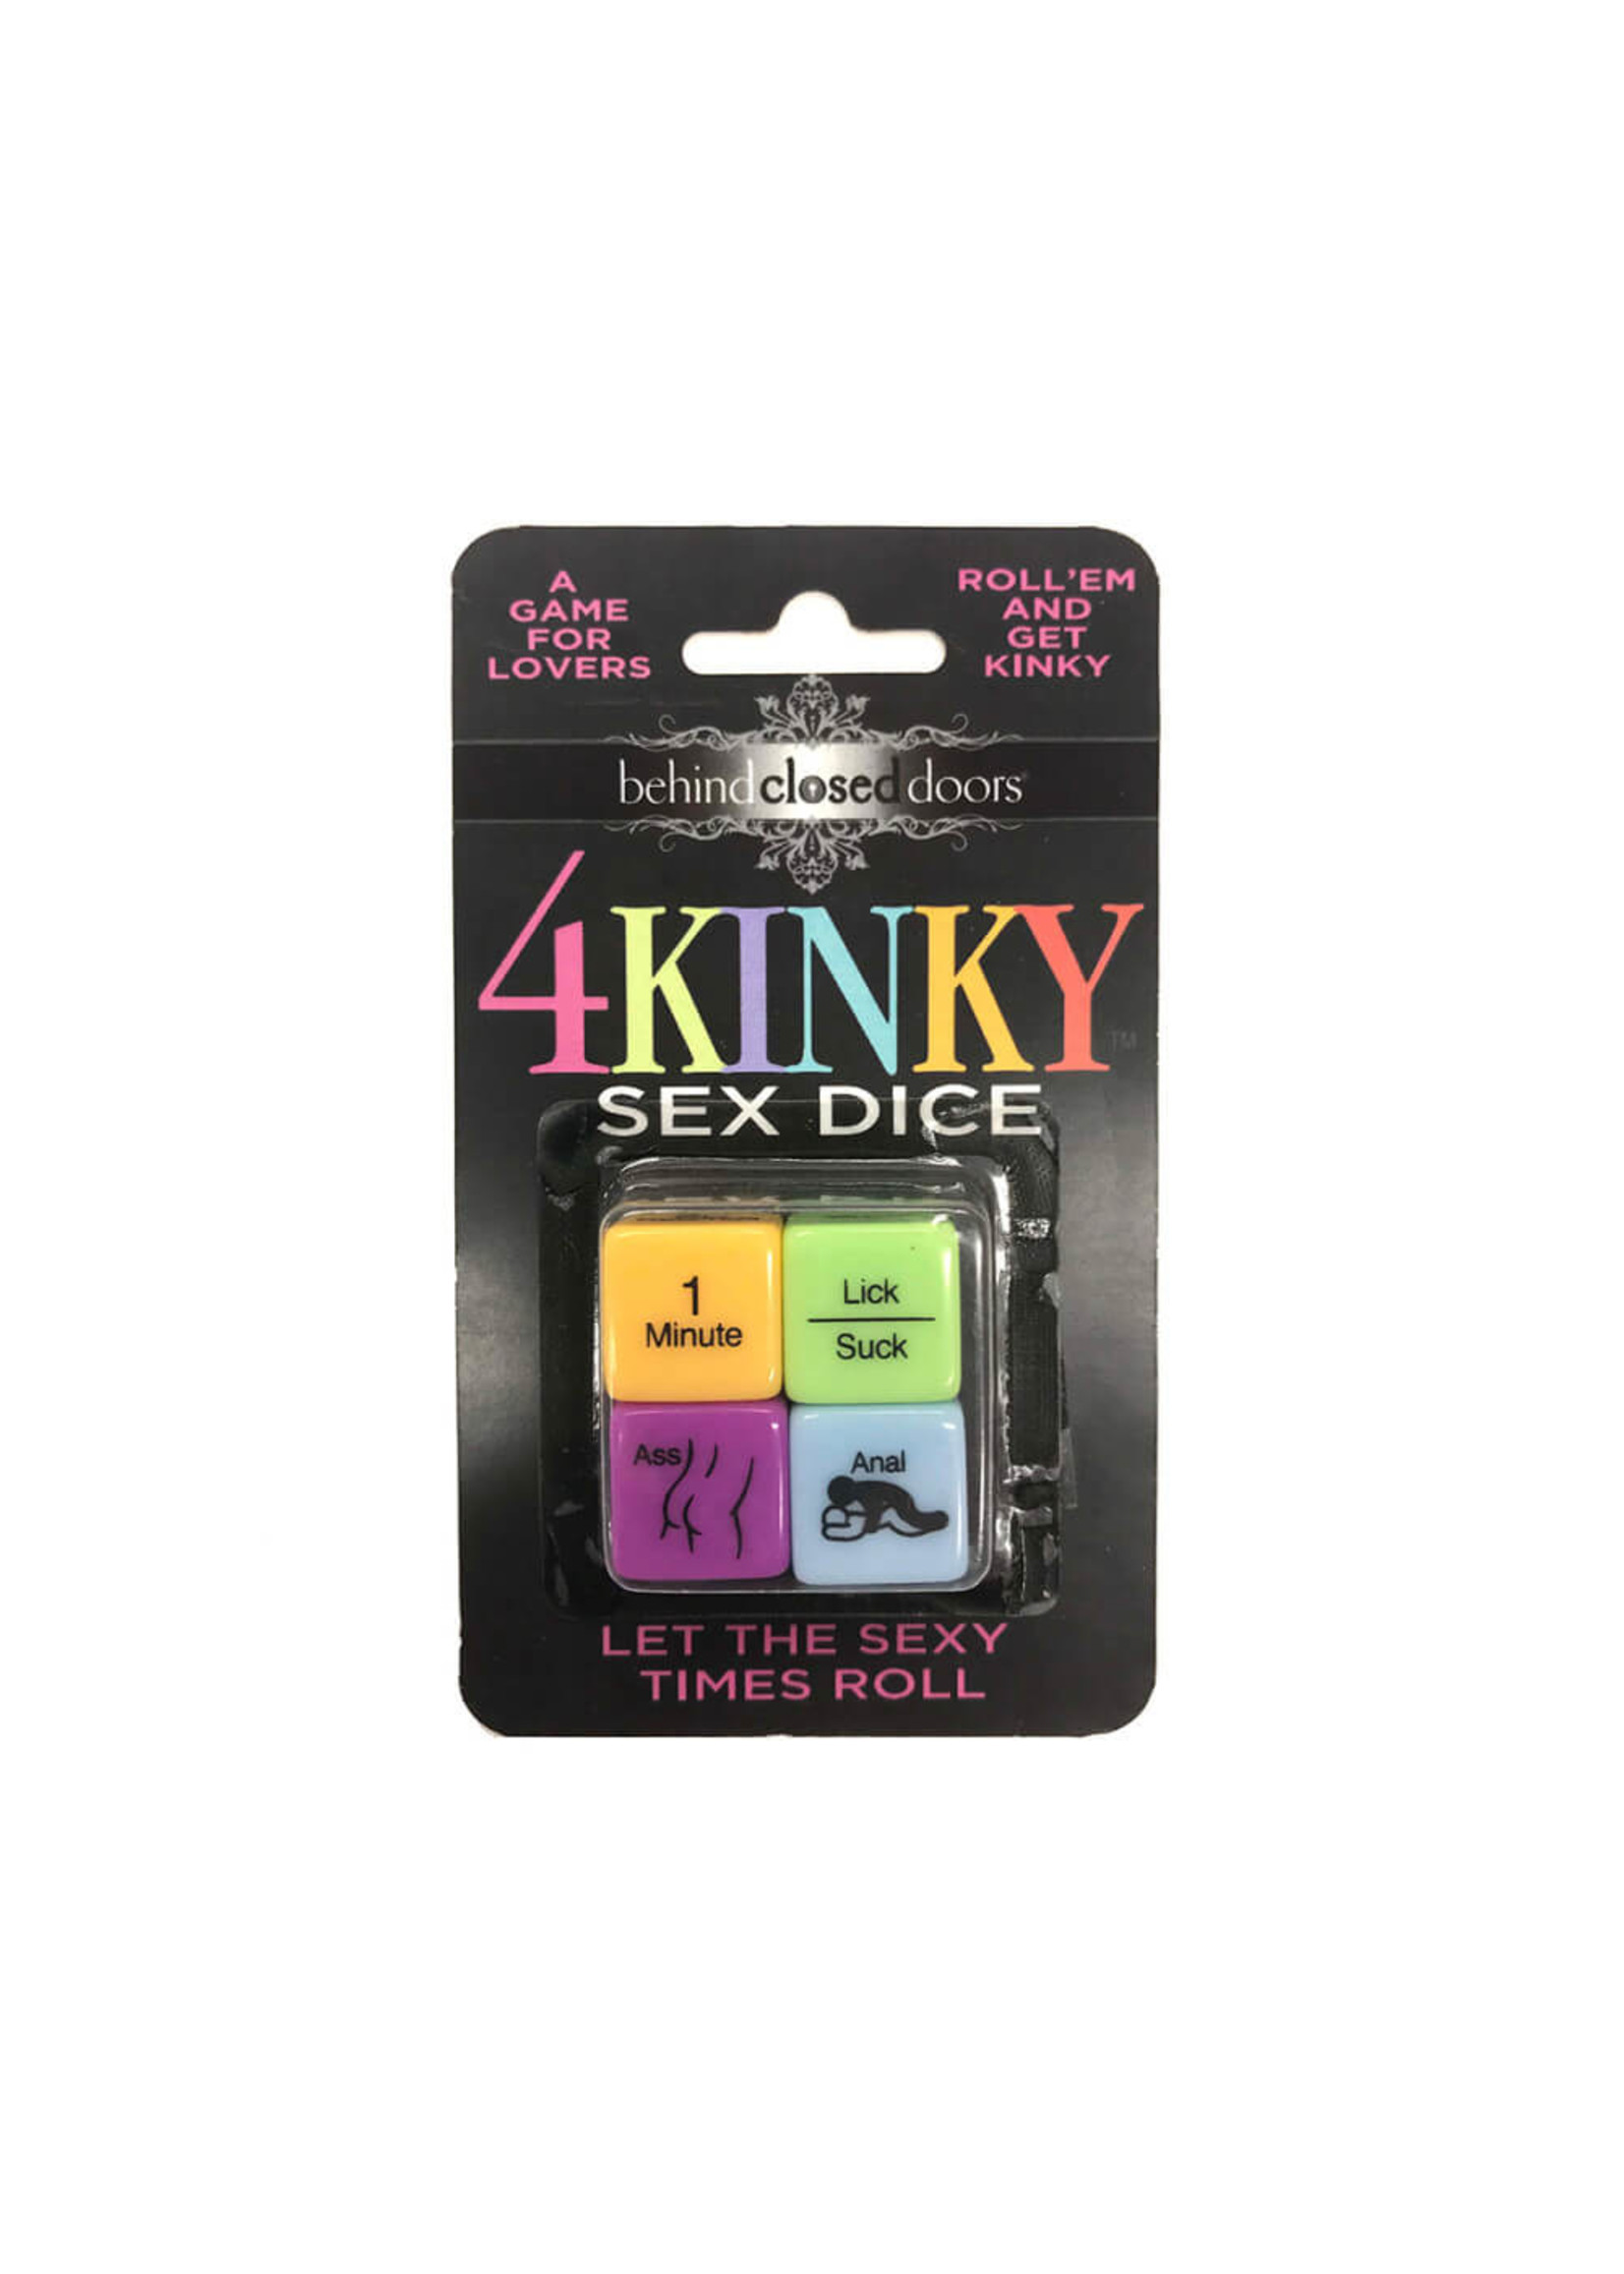 4 Kinky Sex Dice